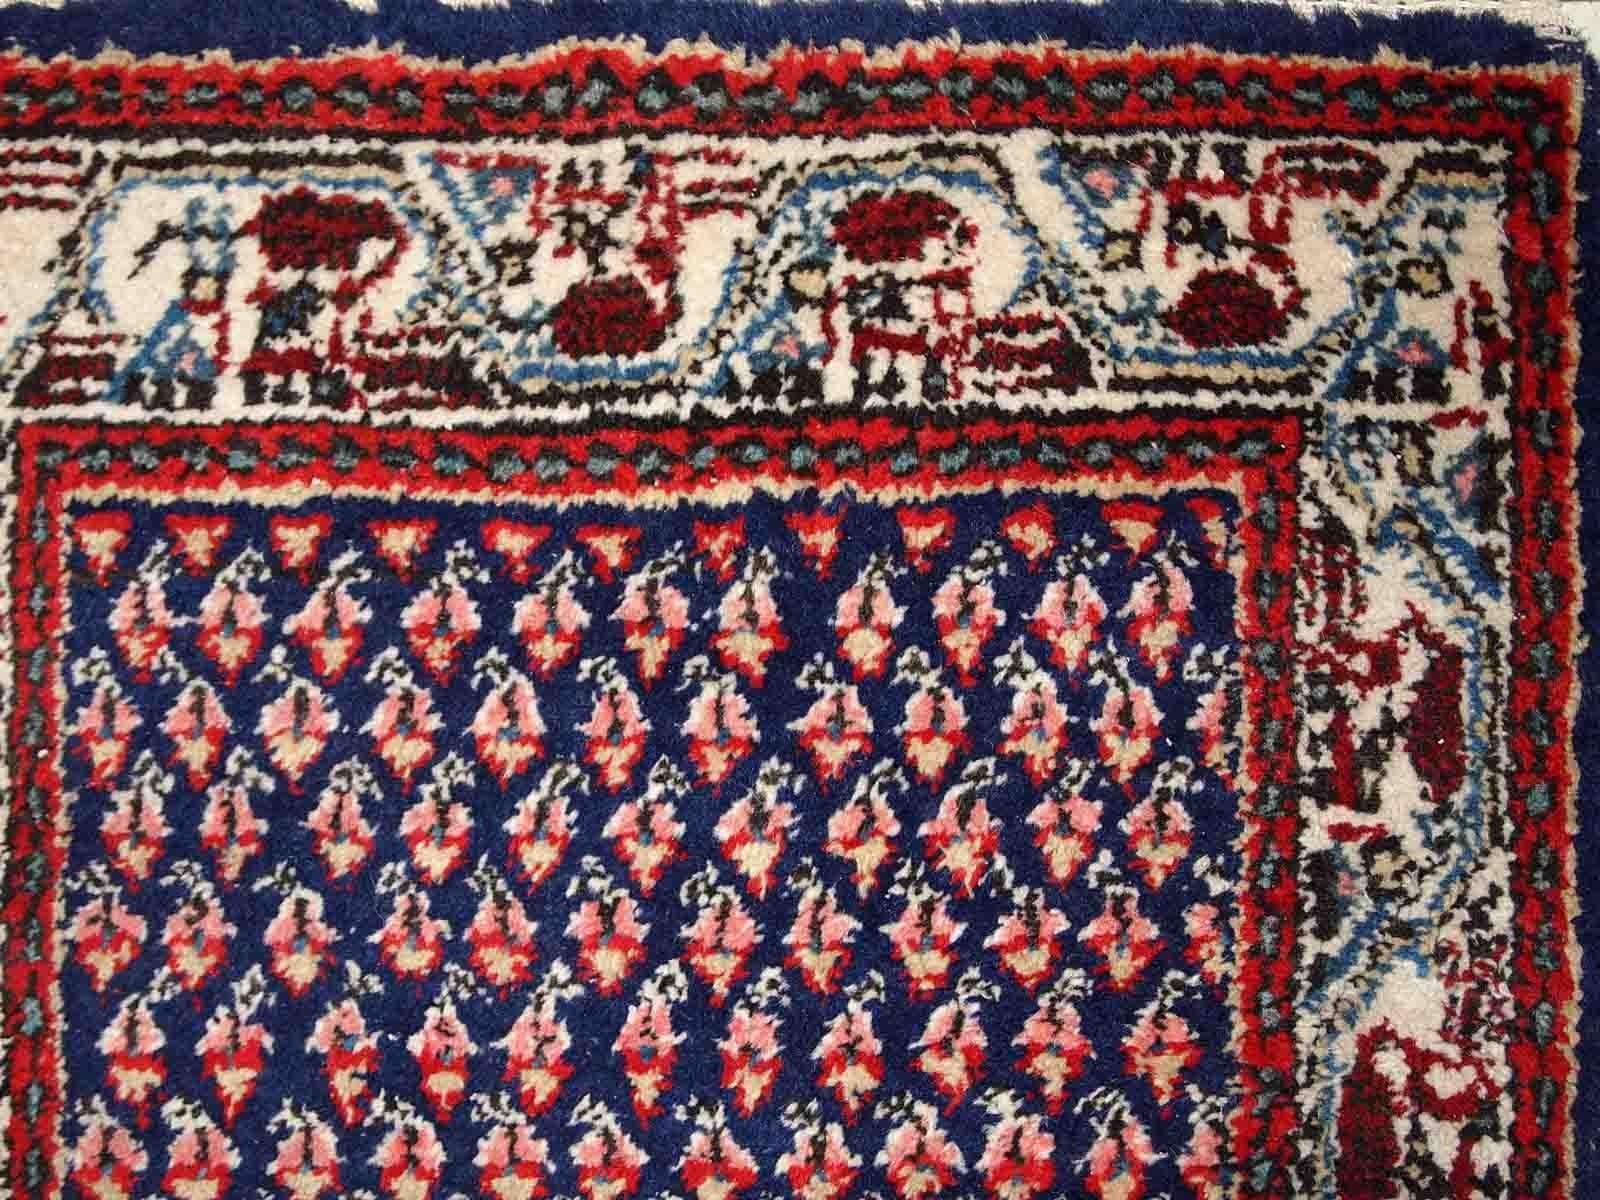 Handgefertigter alter indischer Teppich mit nahöstlichem Seraband-Muster. Der Teppich stammt aus dem Ende des 20. Jahrhunderts, er ist in gutem Originalzustand.

-zustand: originell gut, 

-etwa: 1970er Jahre,

-größe: 2' x 4' (62cm x